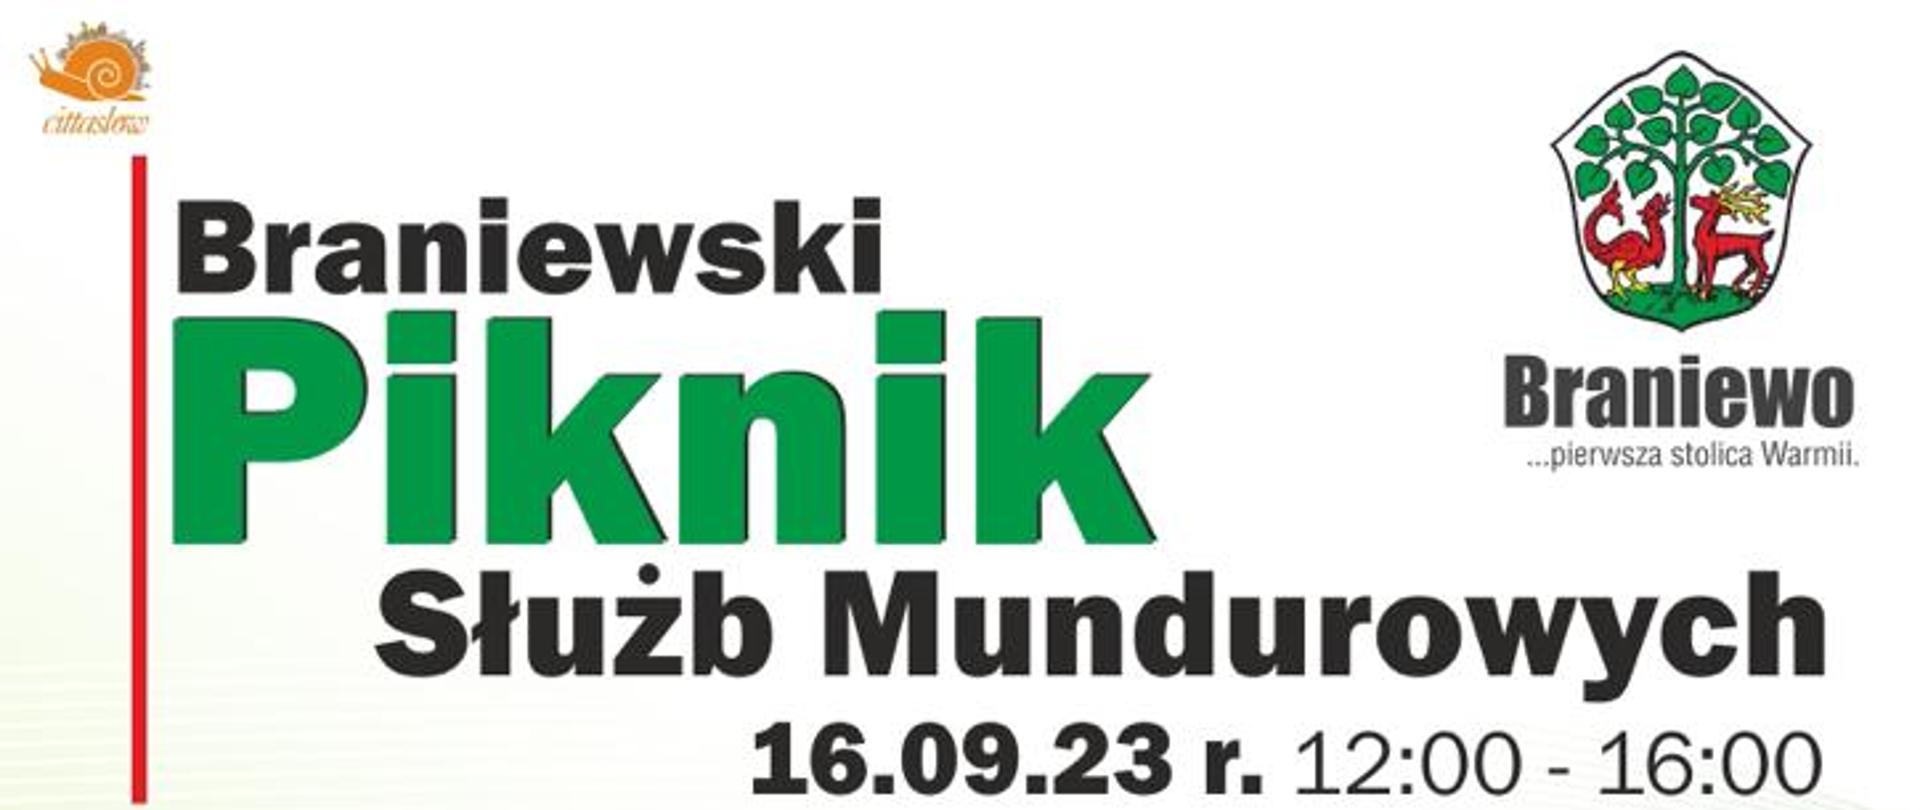 Plakat reklamujący Piknik Służb Mundurowych 2023